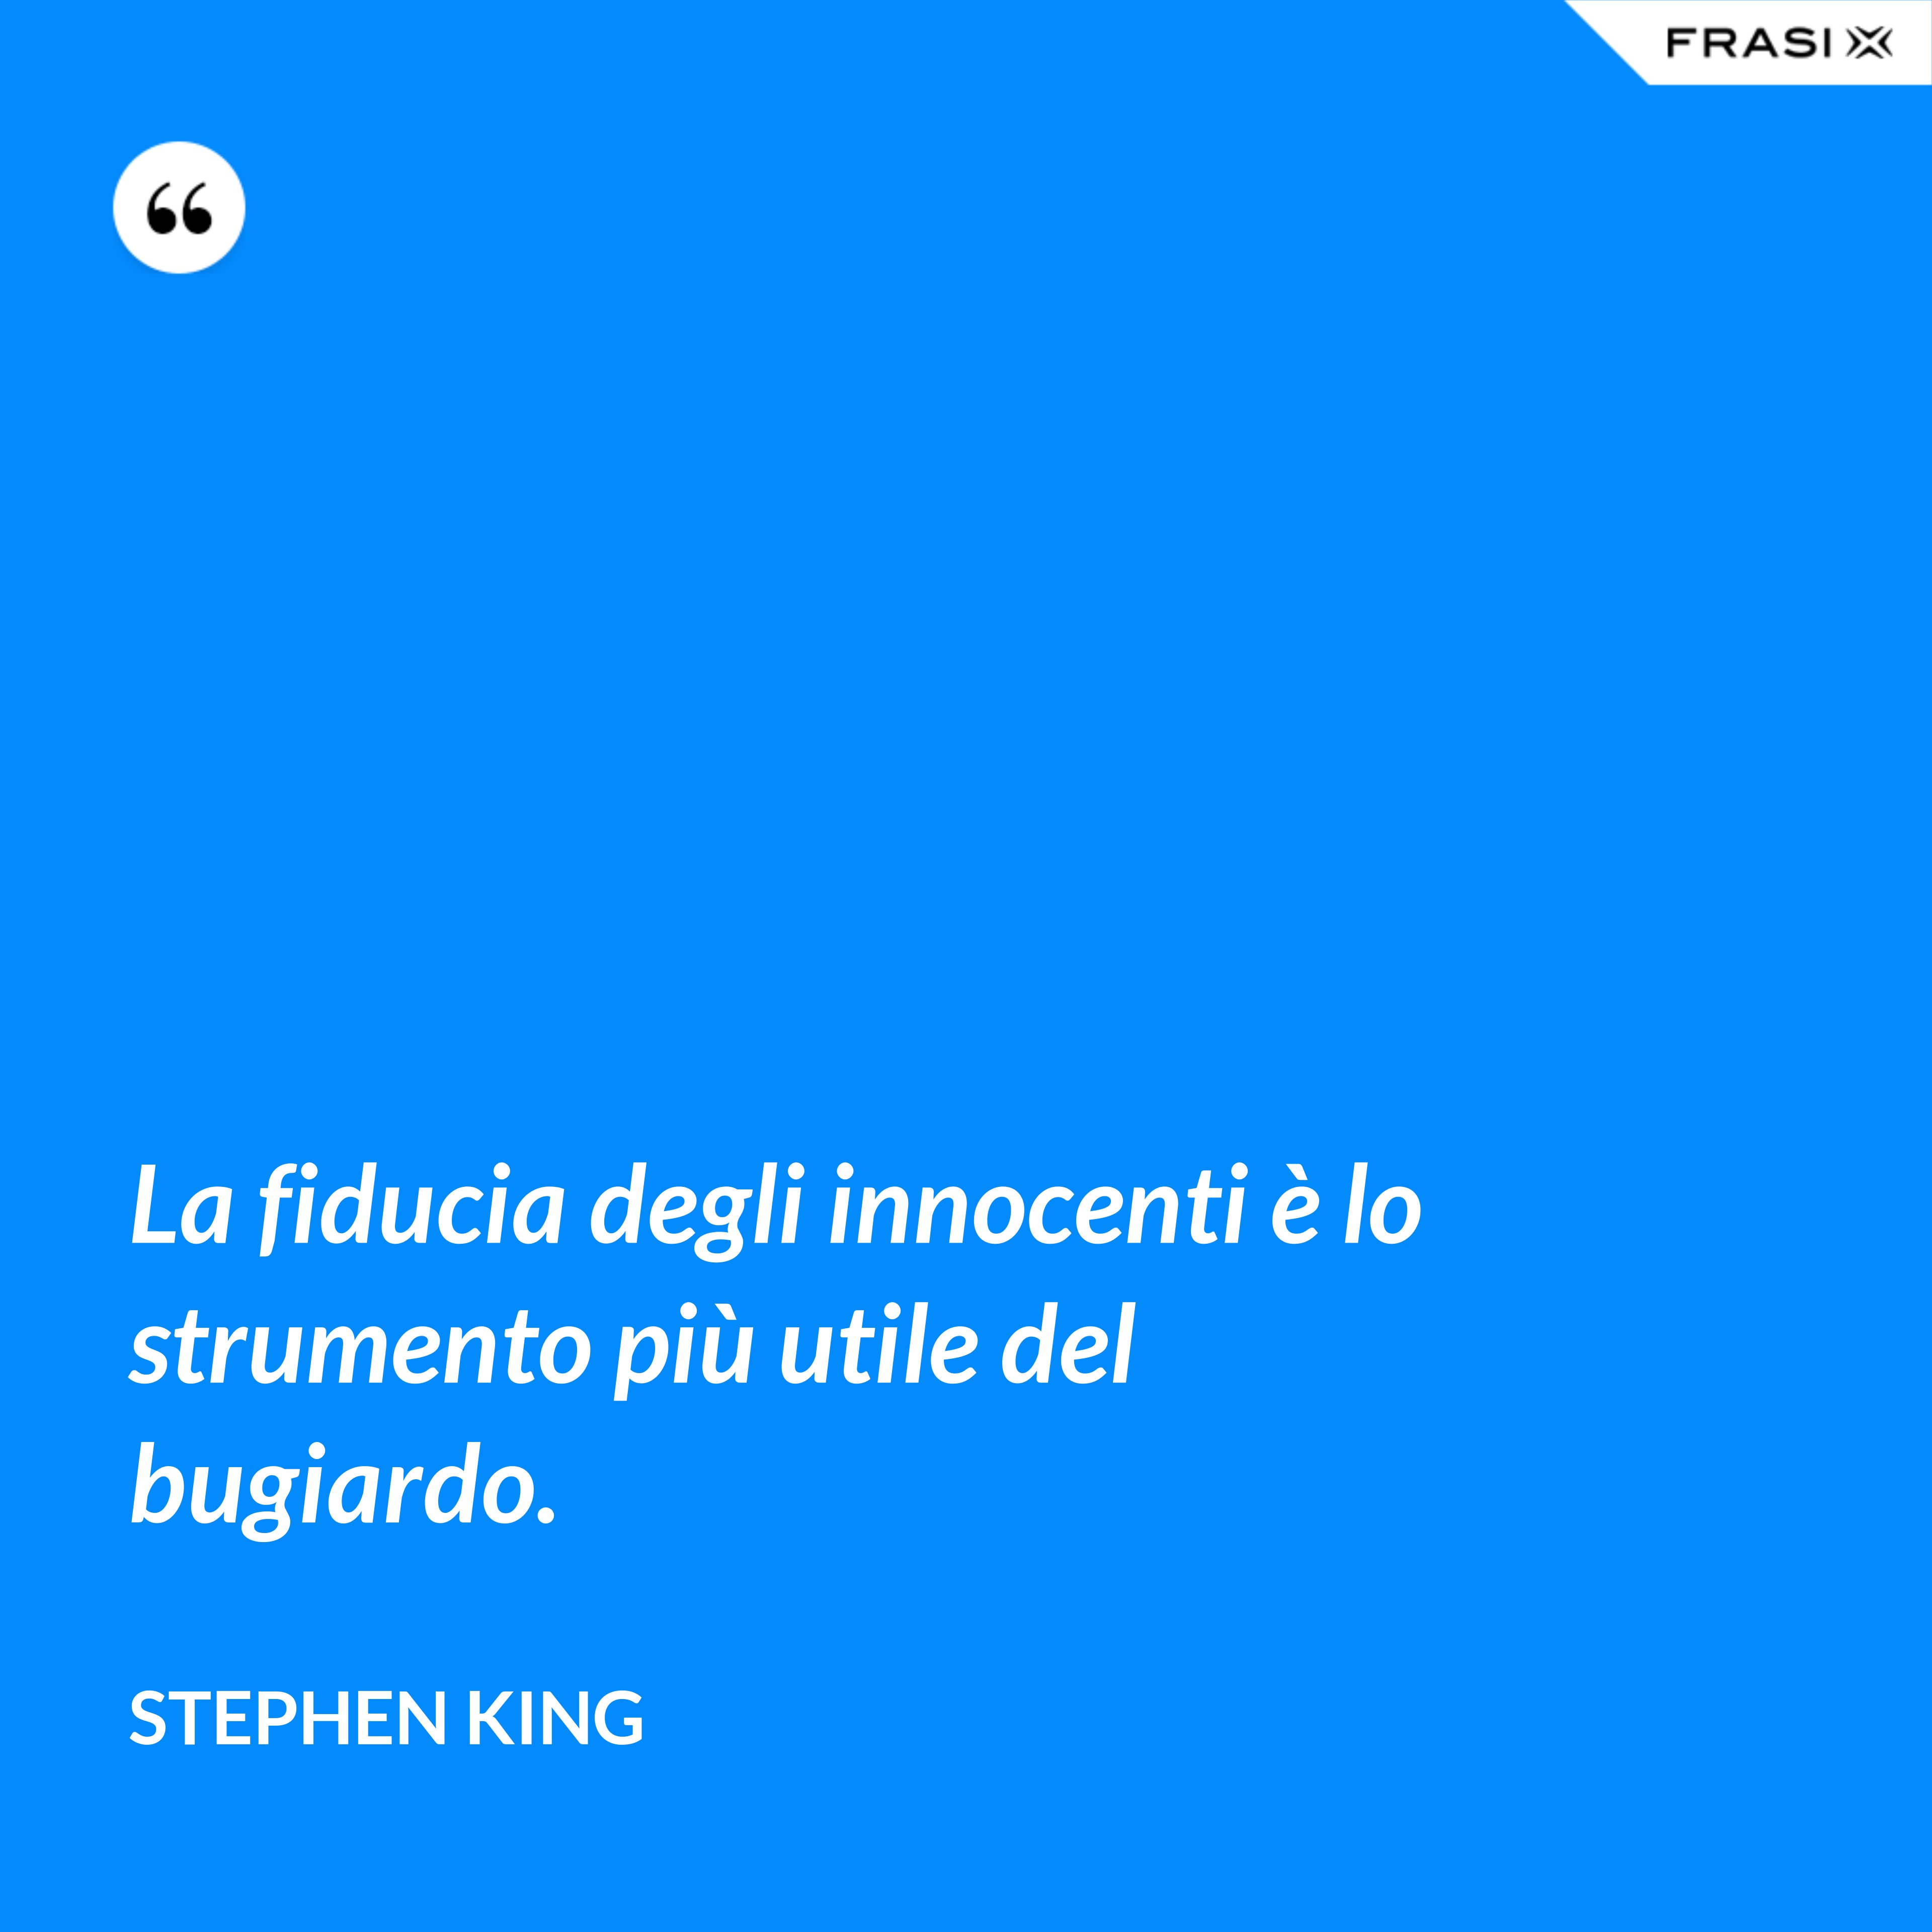 La fiducia degli innocenti è lo strumento più utile del bugiardo. - Stephen King